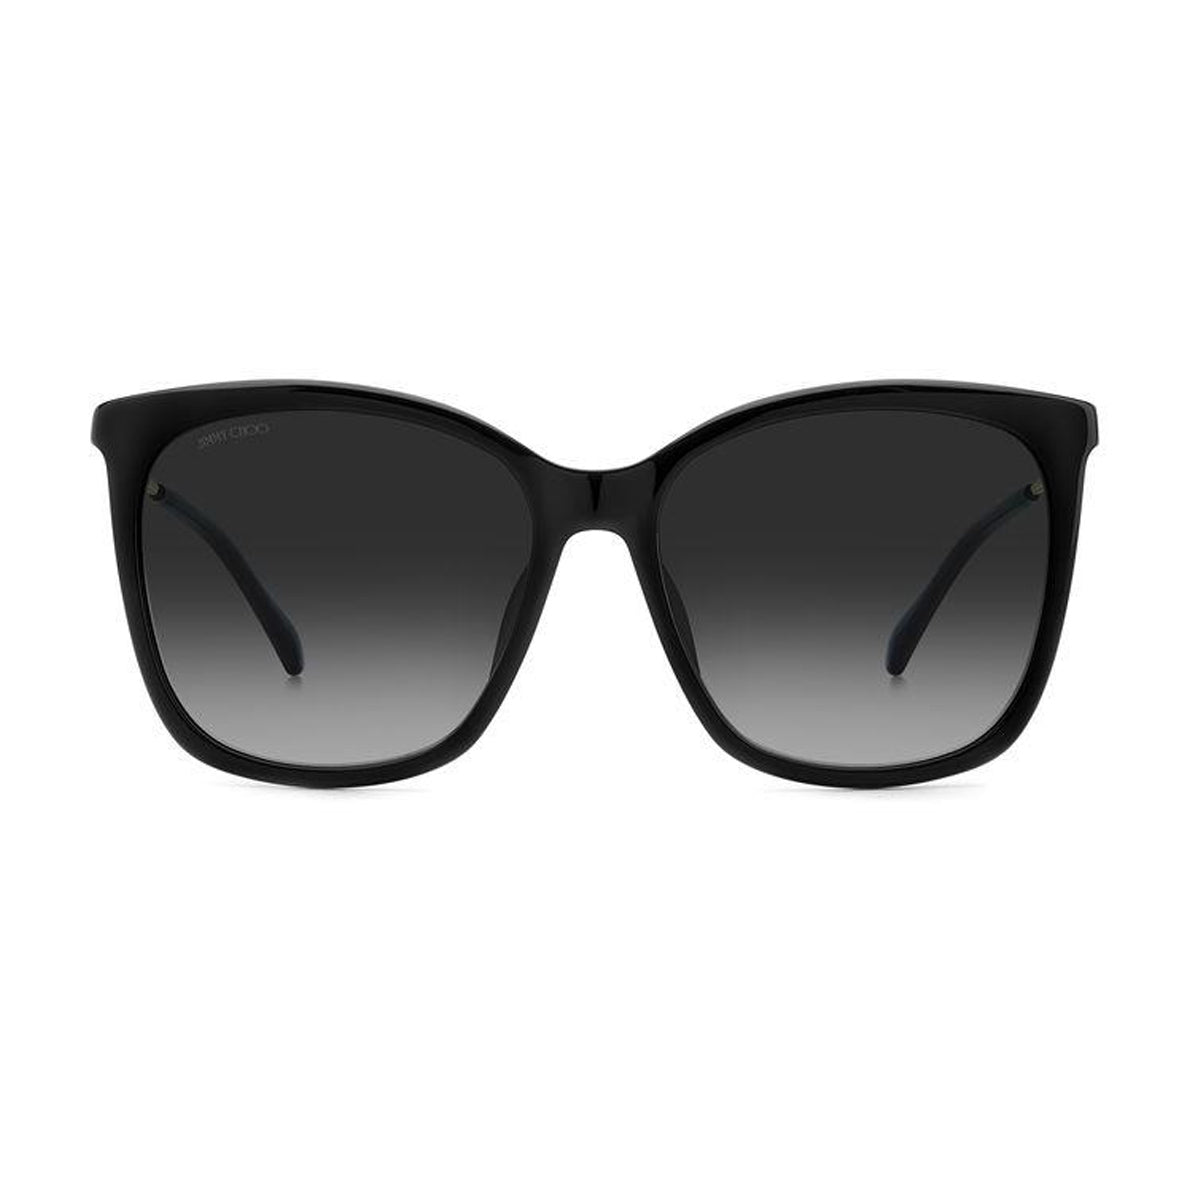 Jc Nerea/g/s 807/9O BLACK-Occhiali da sole-Jimmy Choo-La collezione di occhiali da sole Crystal Fabric di Jimmy Choo rappresenta il fascino unico e scintillante del marchio. Questa linea presenta un design straordinario con lussuosi cristalli Swarovski, applicati a mano sulle aste, che caratterizzano una selezione di occhiali ultra chic con uno stile inconfondibile. Questo modello dalla silhouette squadrata cool e disinvolta, presentano un frontale in acetato e terminali tono su tono. Le aste sottili in met